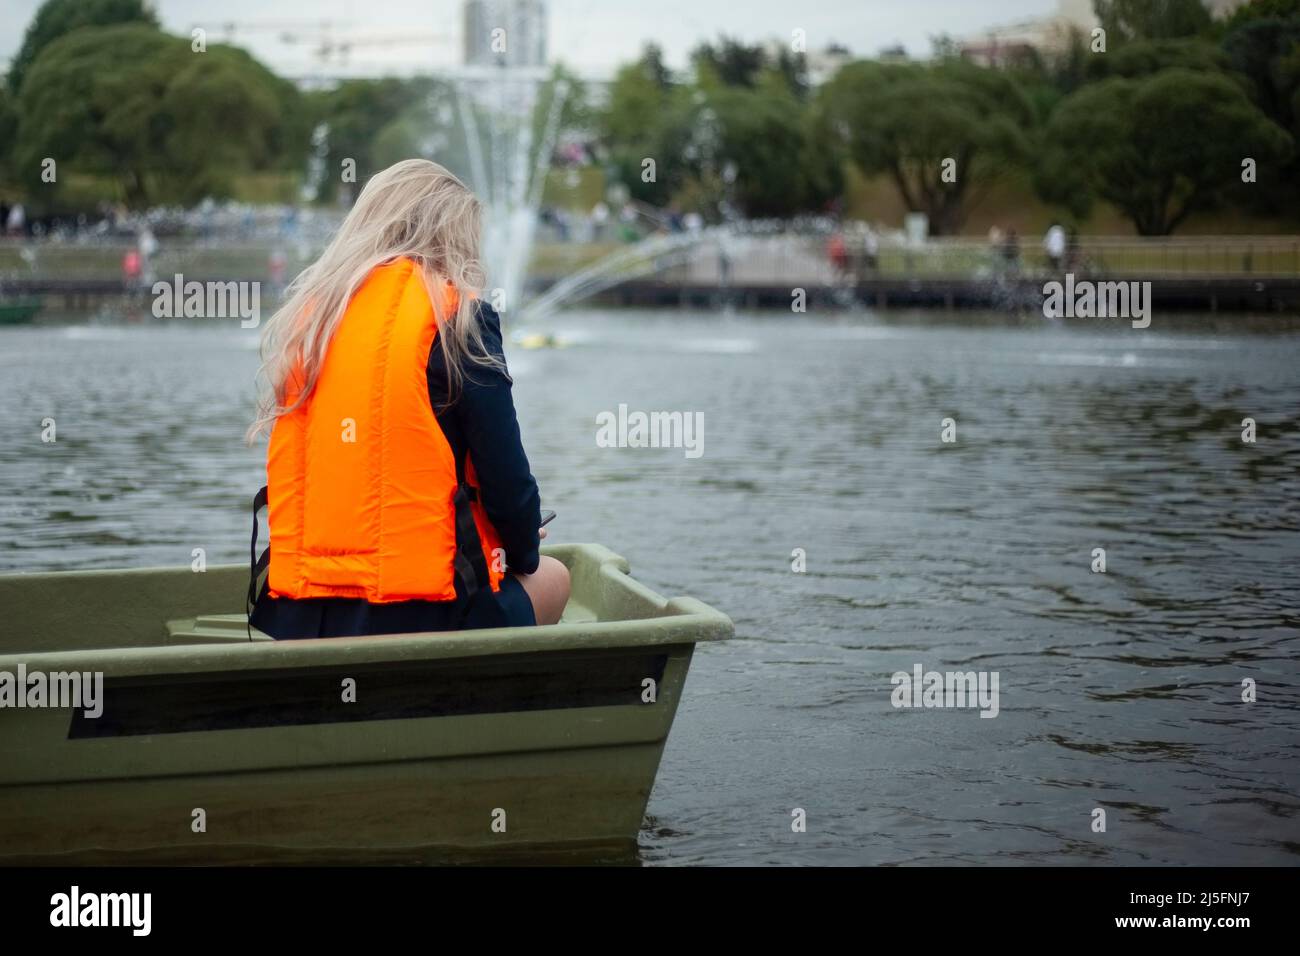 Una chica en un terreno en un barco. Mujeres en un chaleco de seguridad de agua naranja. Un hombre en el parque está navegando. Foto de stock